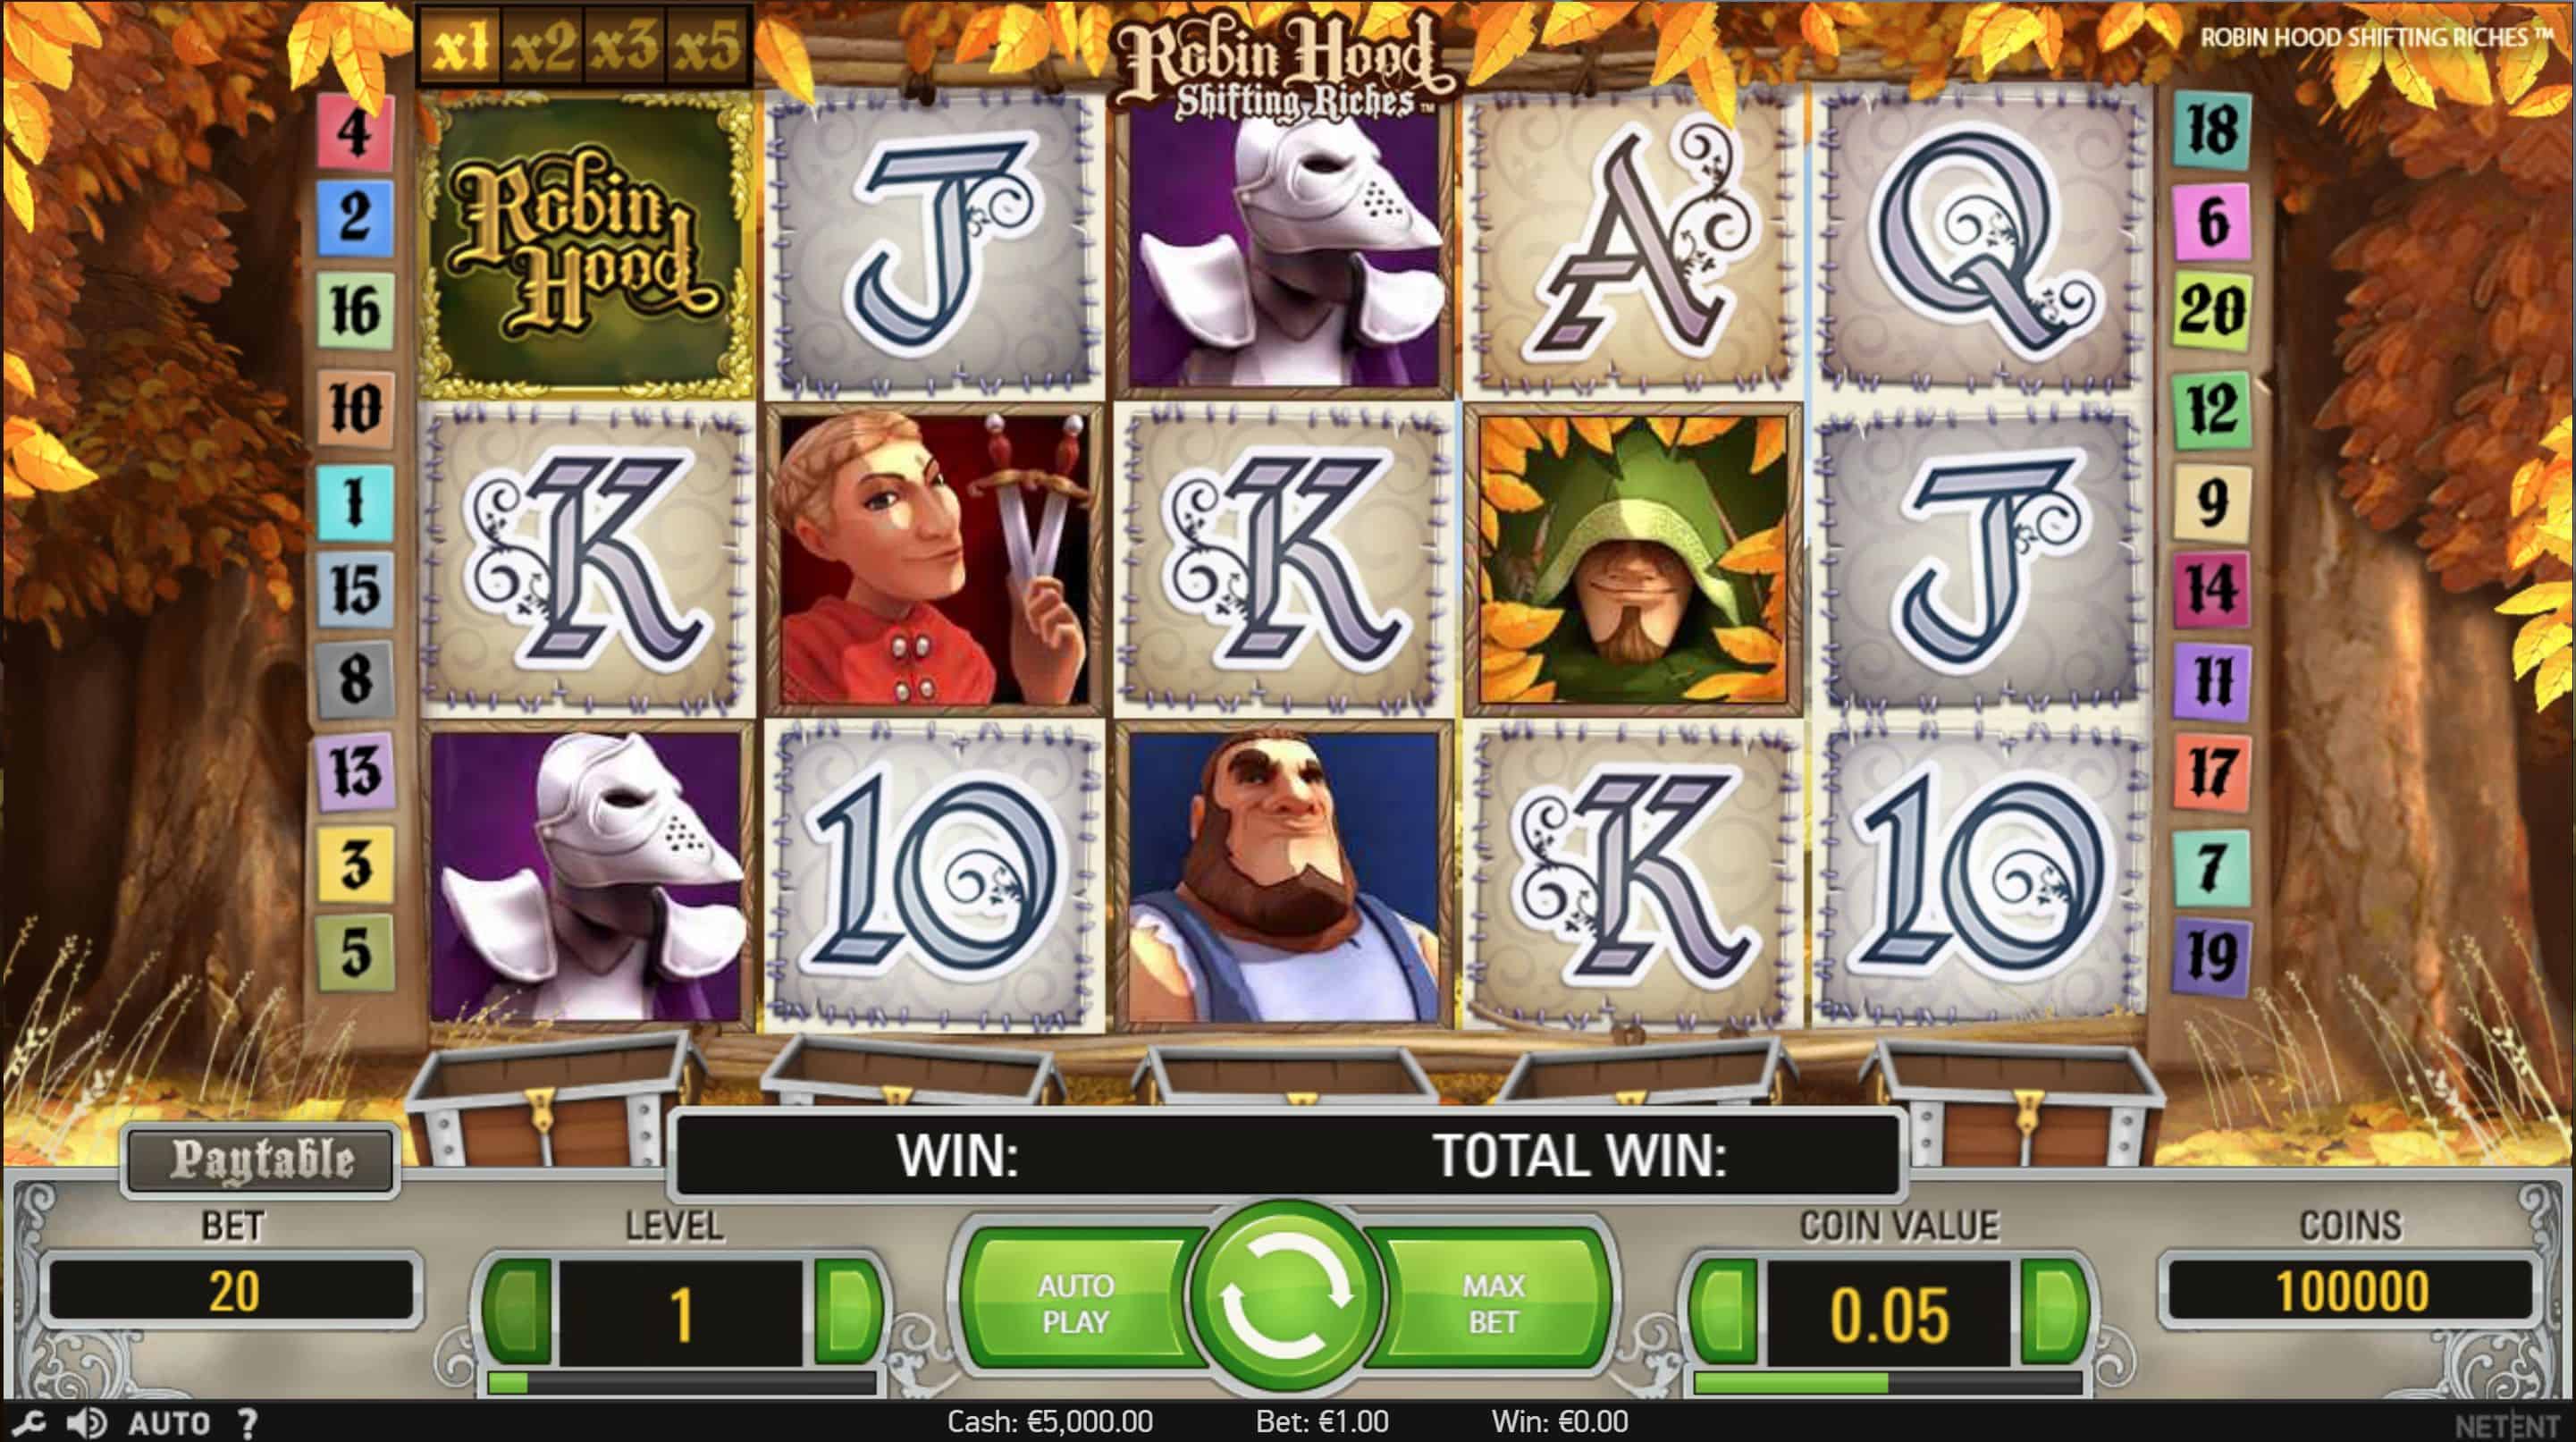 Robin Hood Shifting Riches Slot Game Free Play at Casino Ireland 01